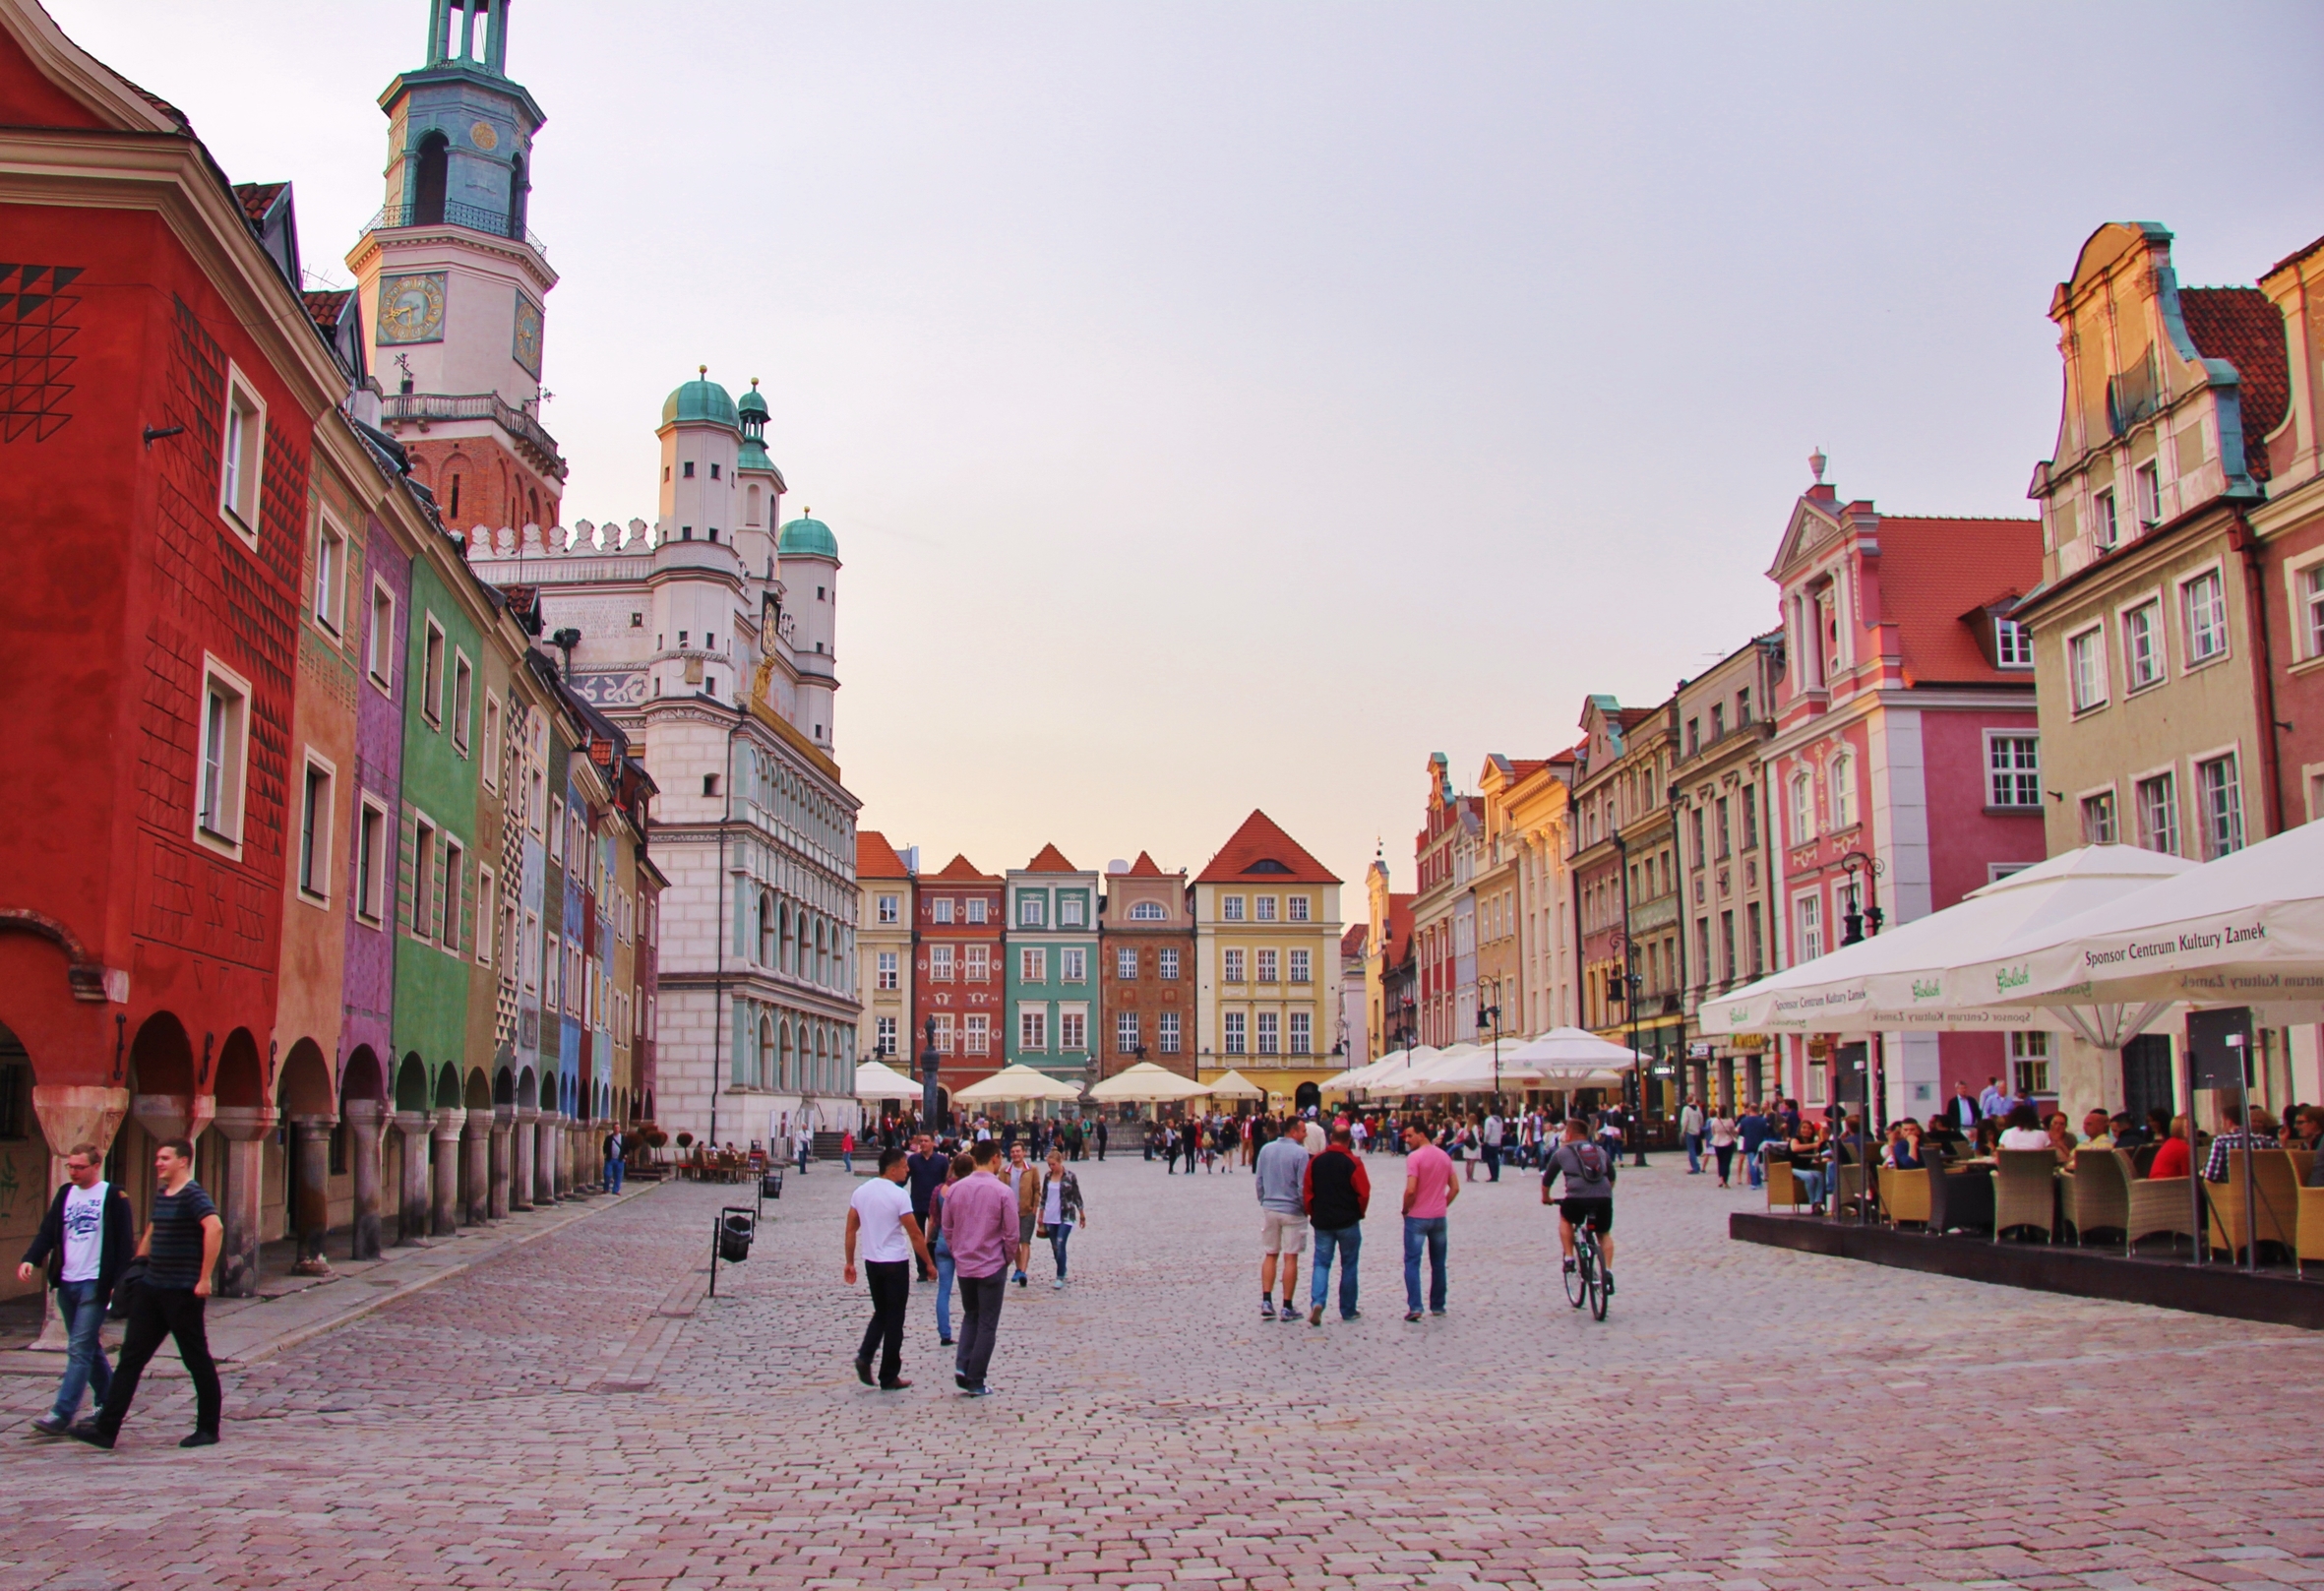 Stary Rynek, Poznan's Old Market Town